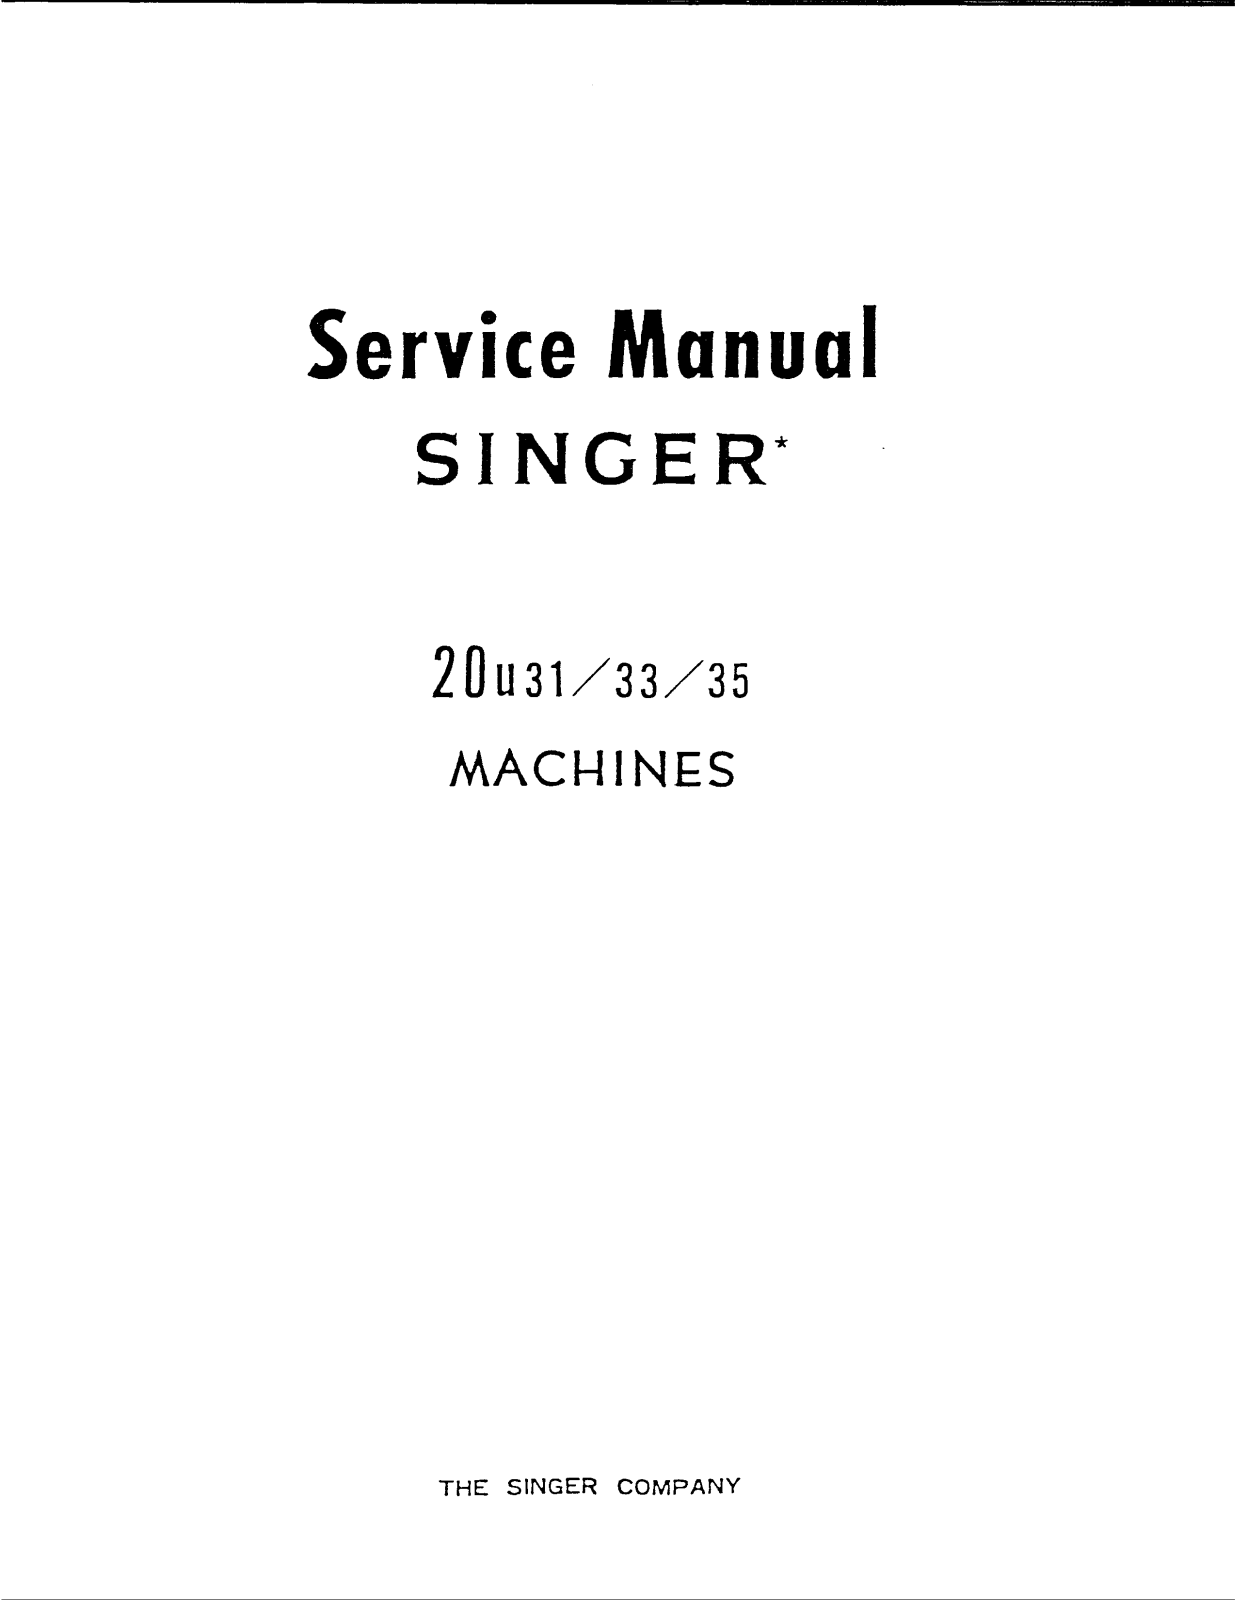 Singer 20U 35, 20U 33, 20U 31 Service Manual